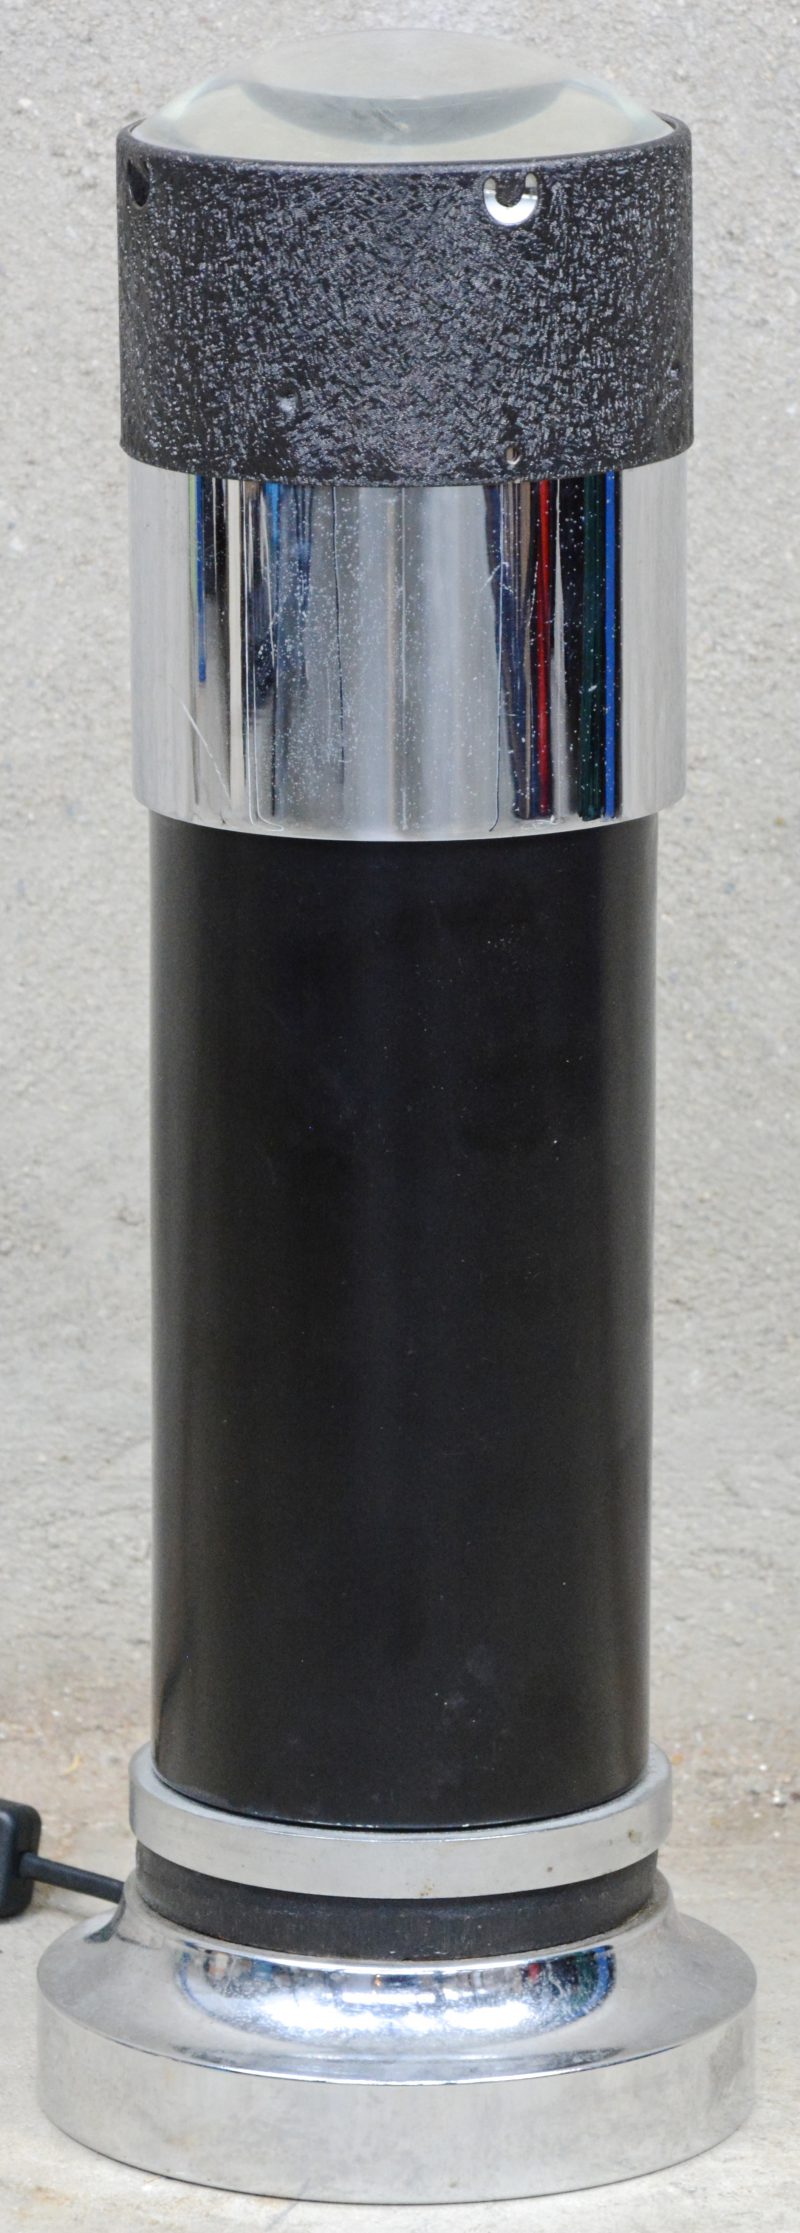 Een metalen lamp met bovenaan een bolle lens.